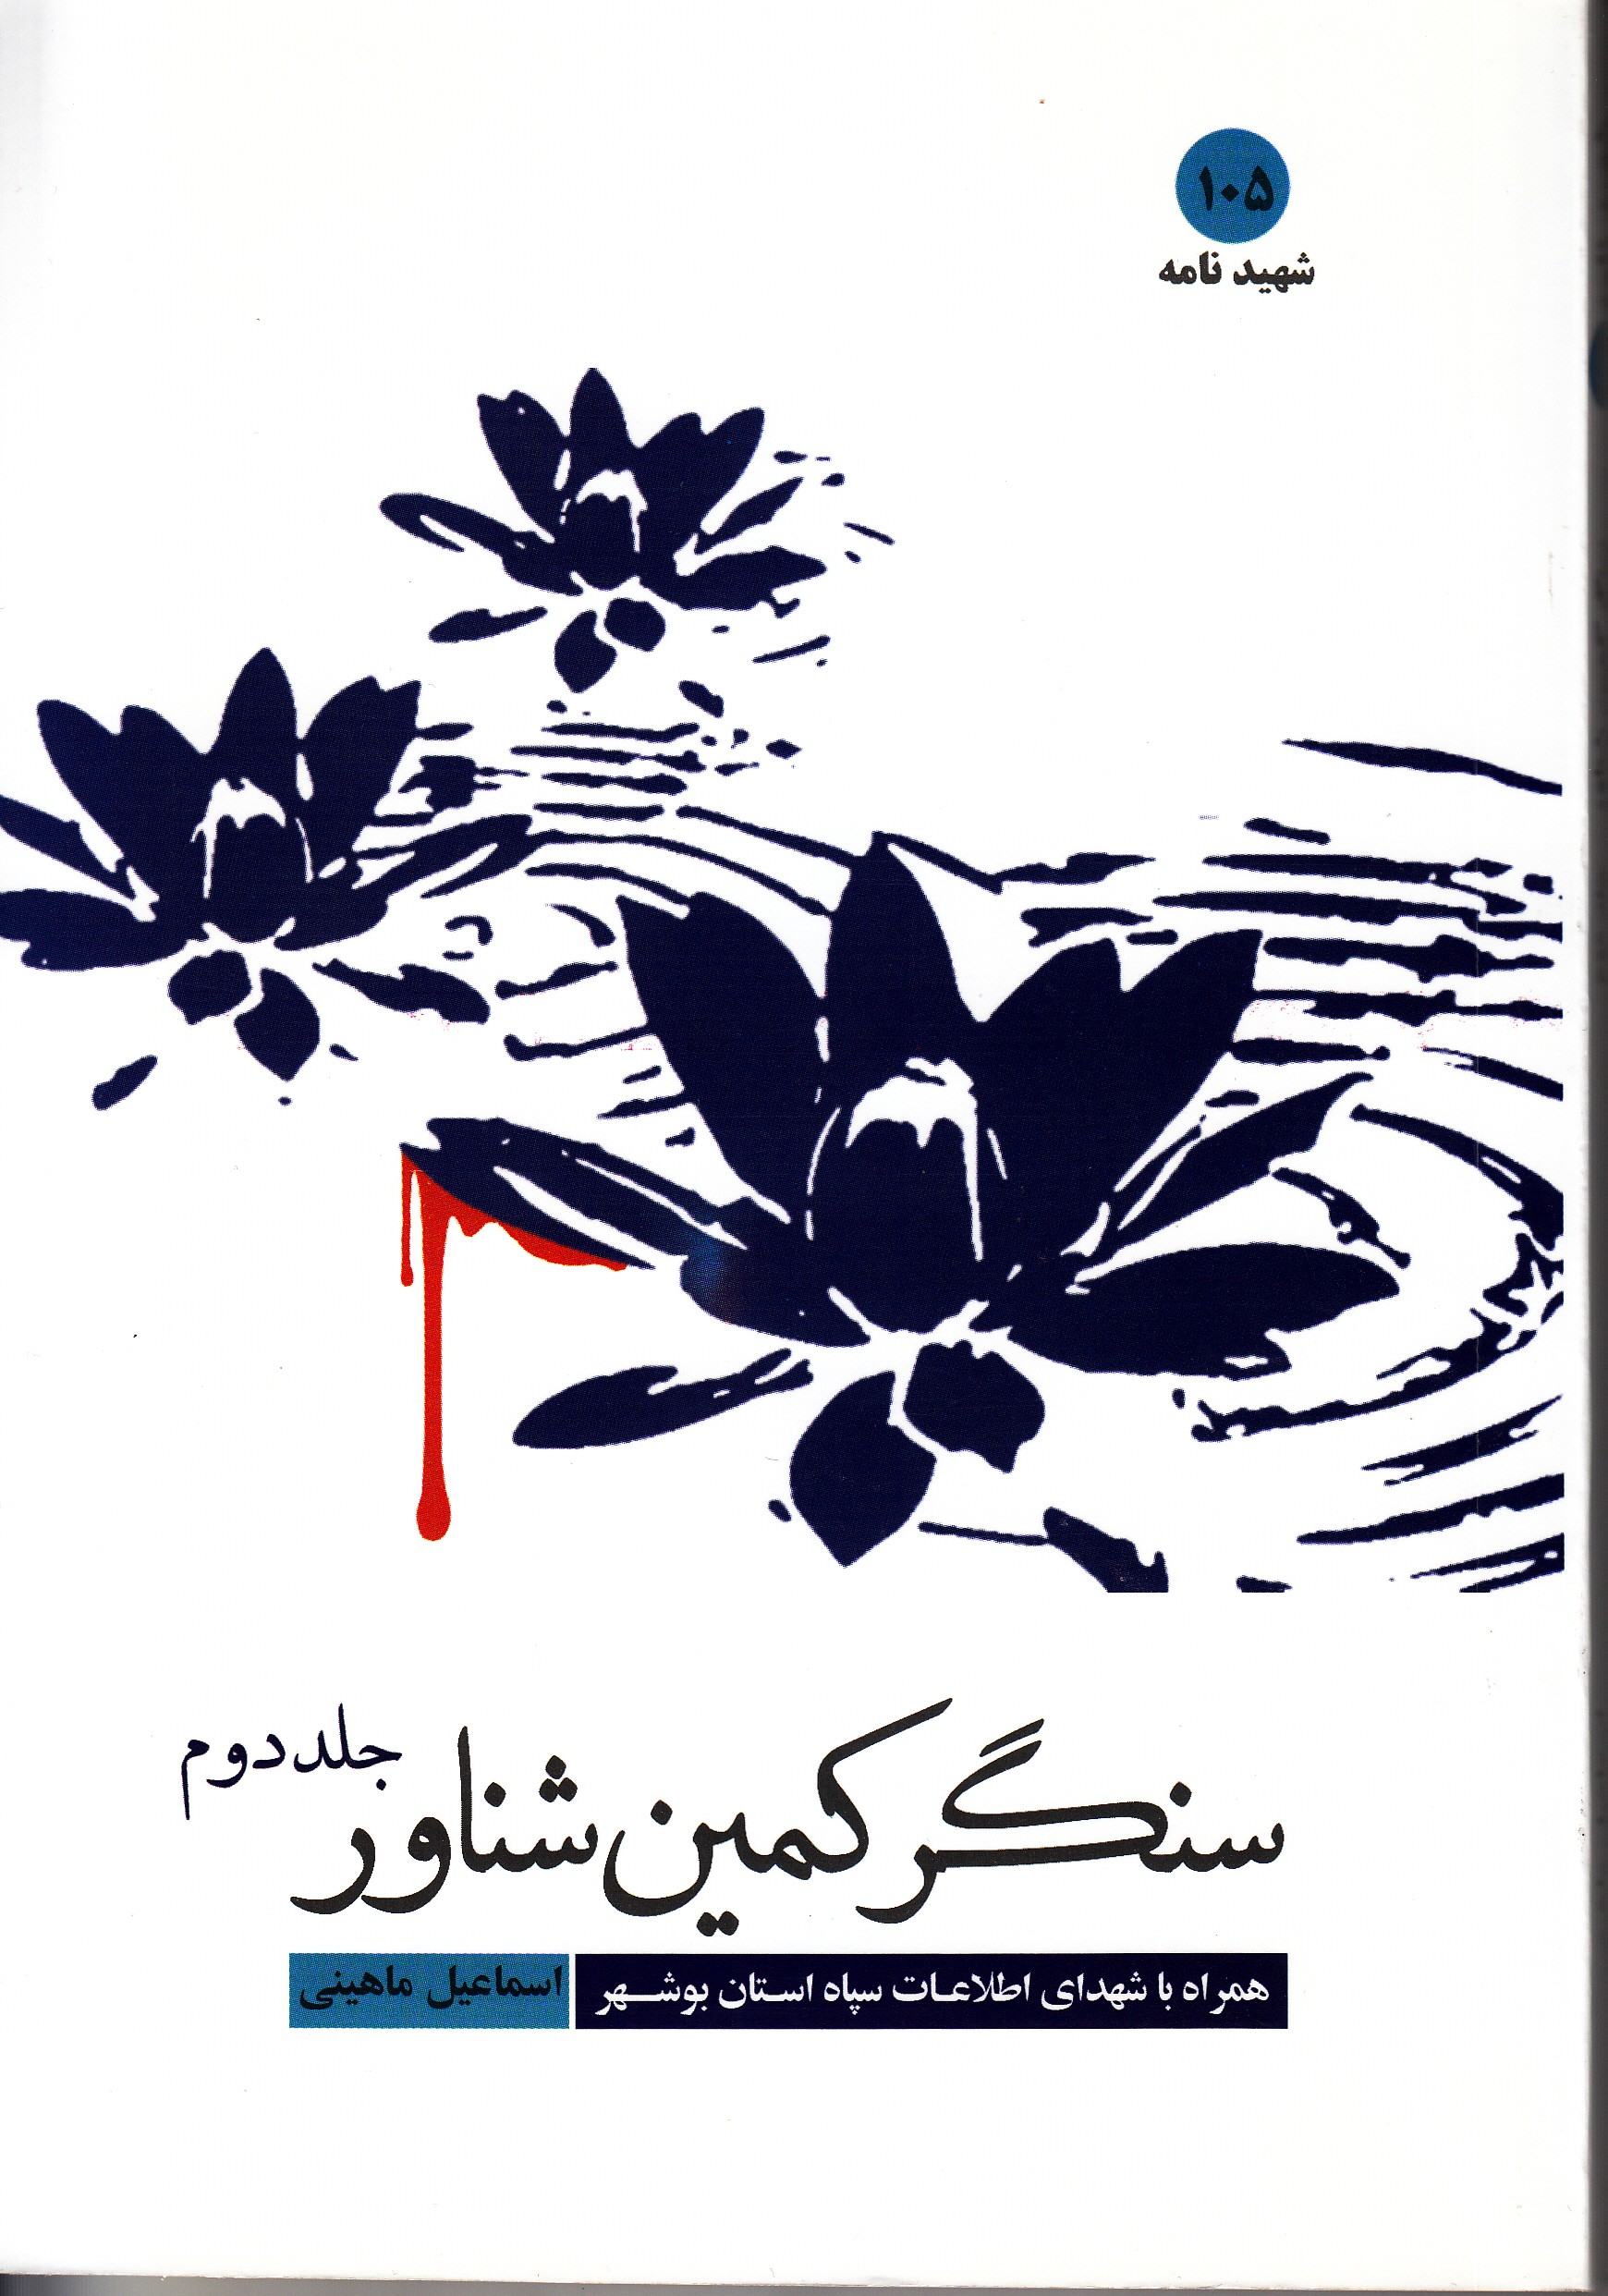 یادی از شهدای اطلاعات سپاه بوشهر در «سنگر کمین، شناور»